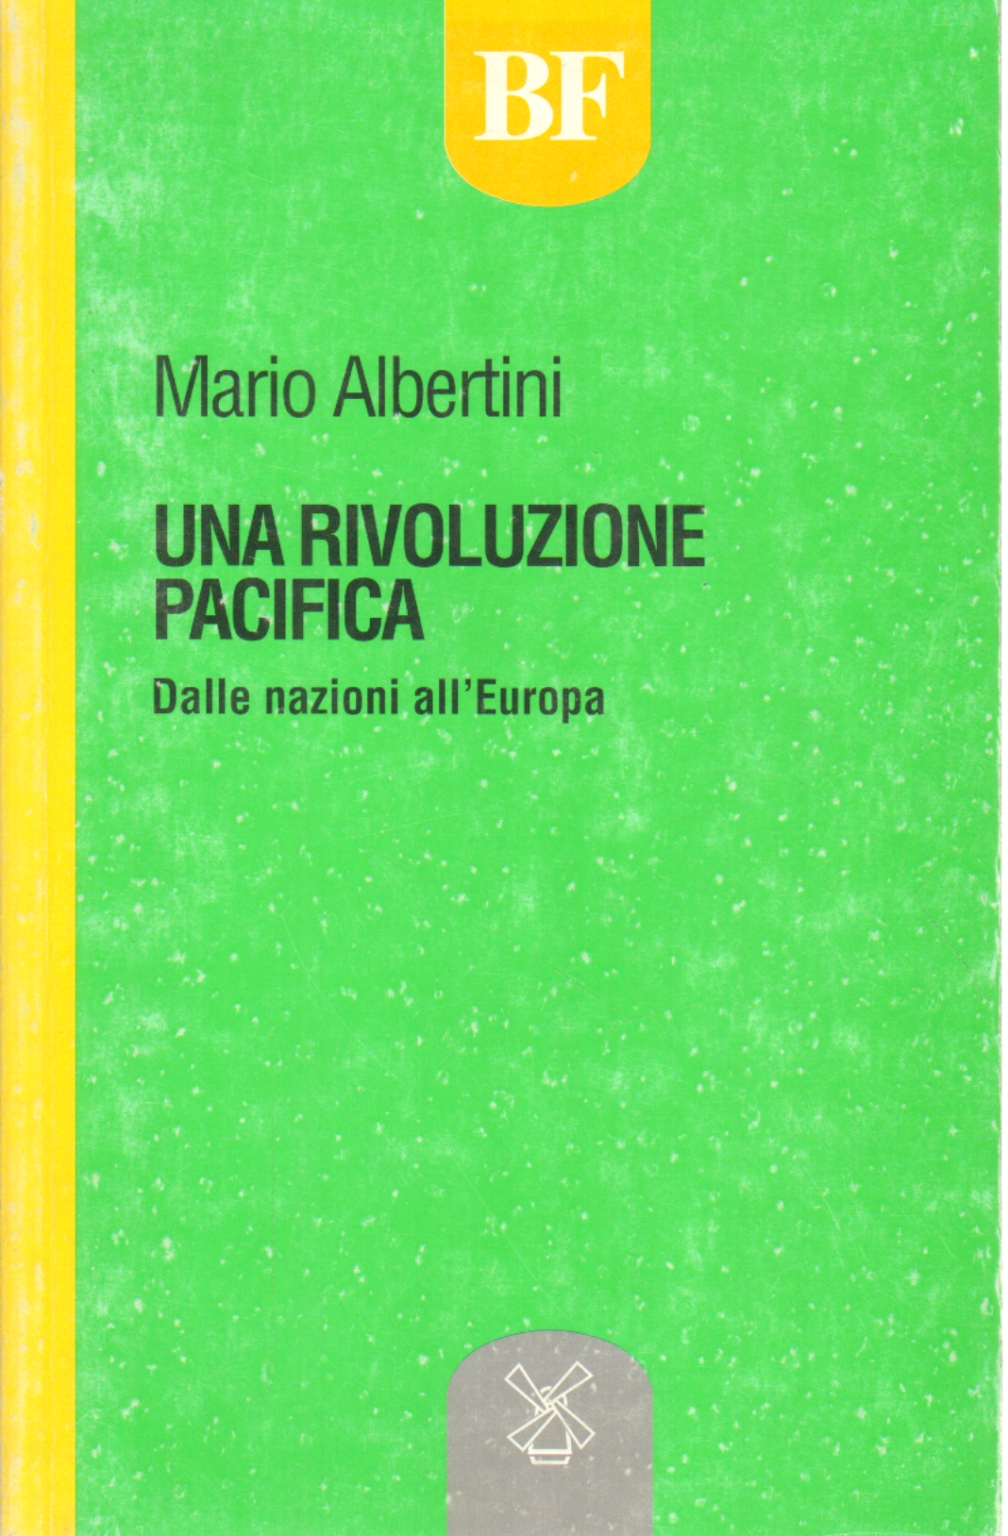 Una rivoluzione pacifica, Mario Albertini